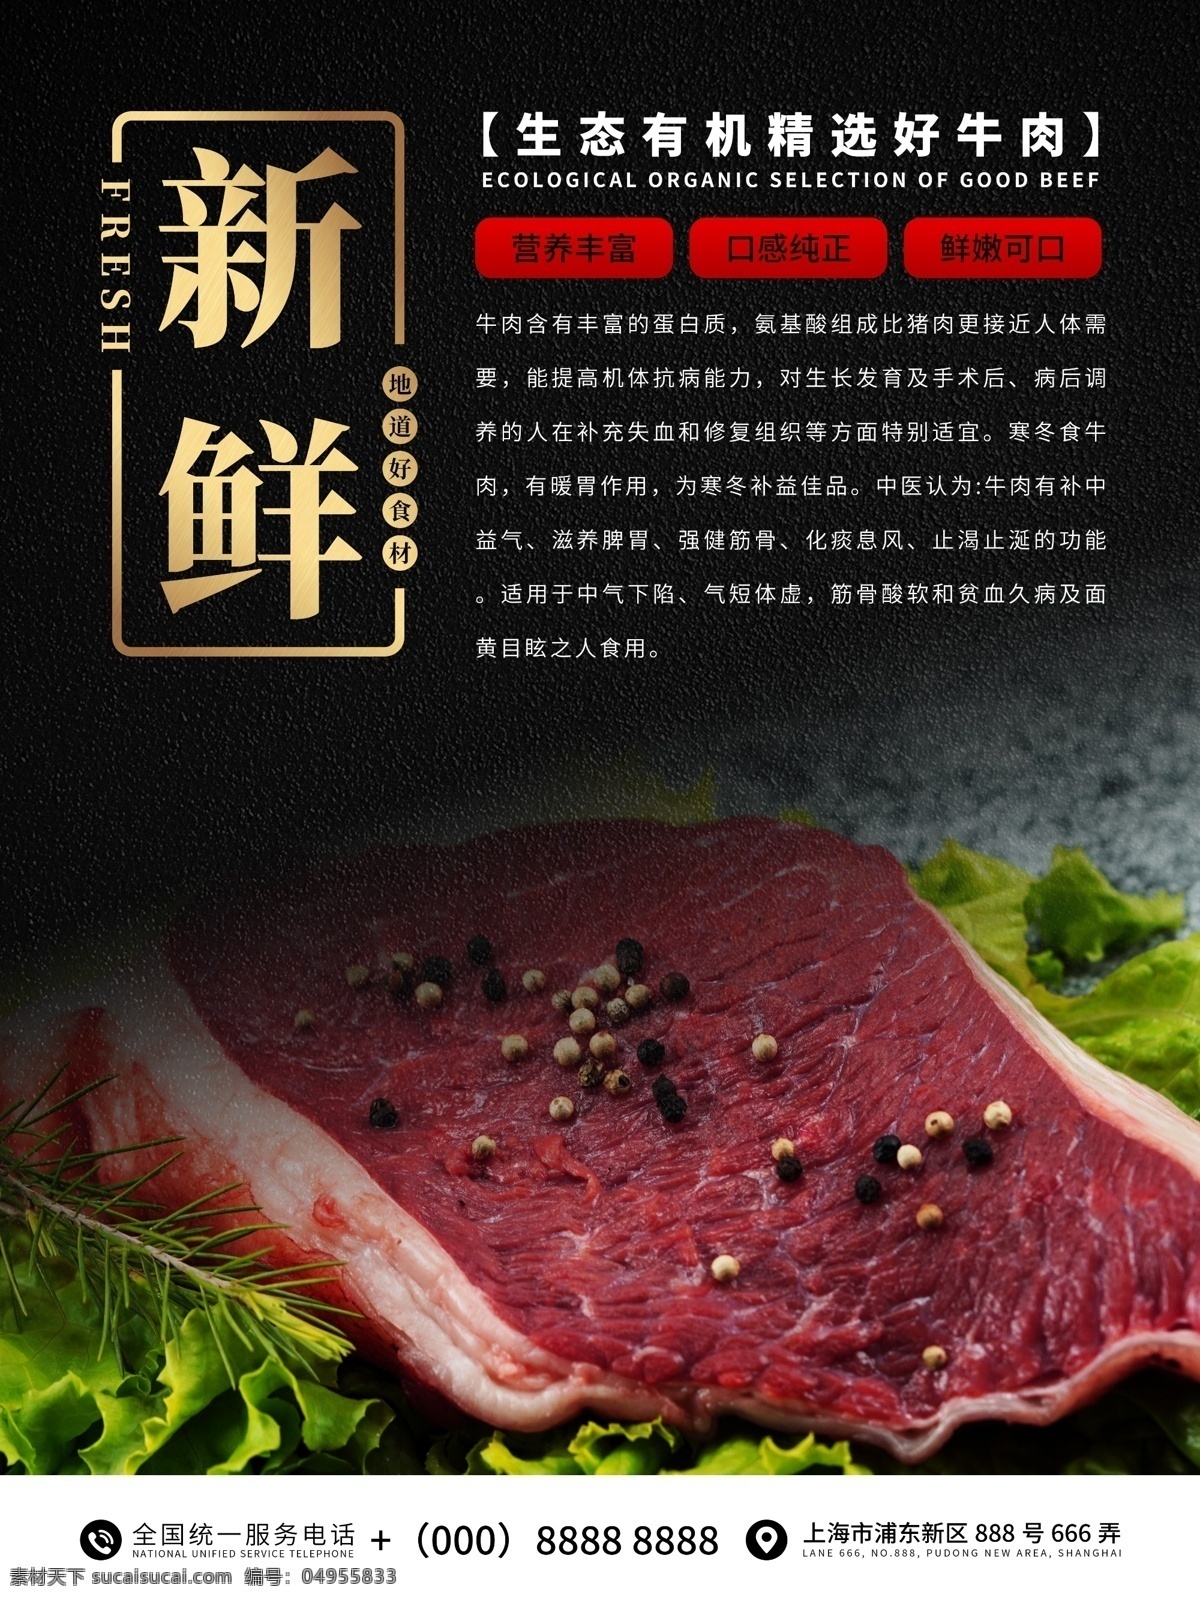 新鲜牛肉海报 牛肉 牛排 肉类 生鲜 食品海报 食物海报 超市海报 产品介绍 新鲜牛肉 生态产品 有机食品 宣传海报